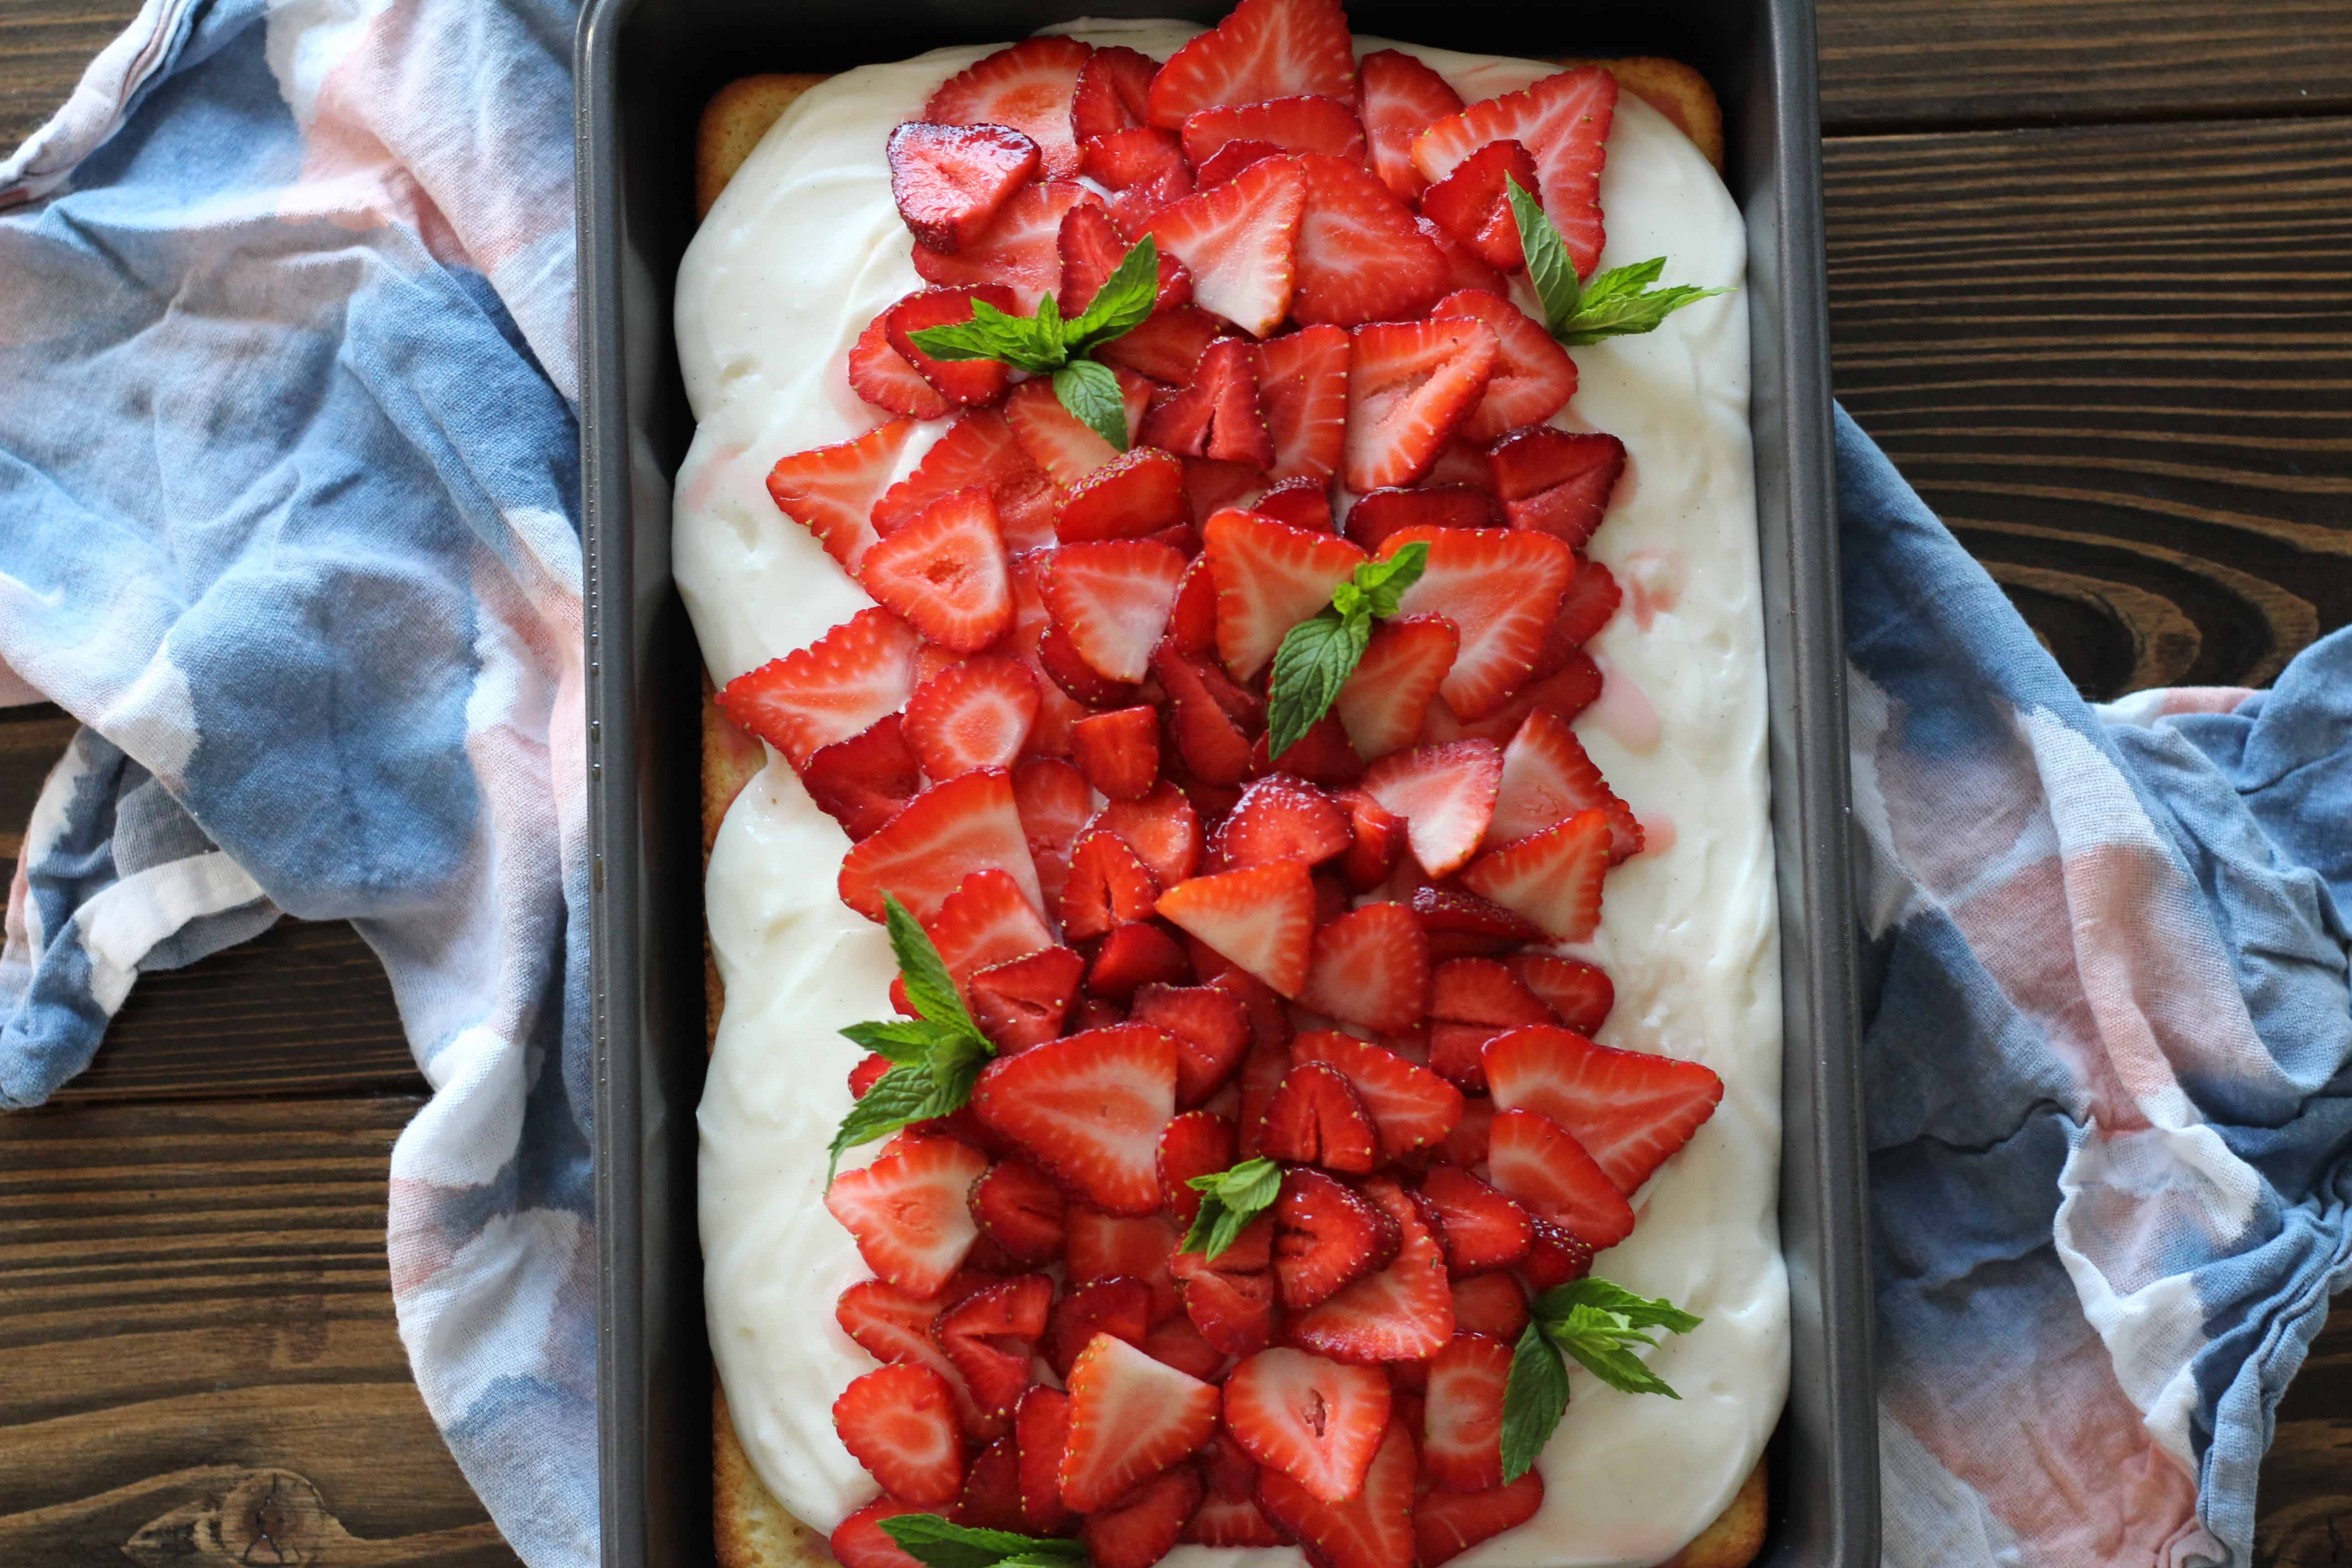 Vanilla Sheet Cake with Strawberries